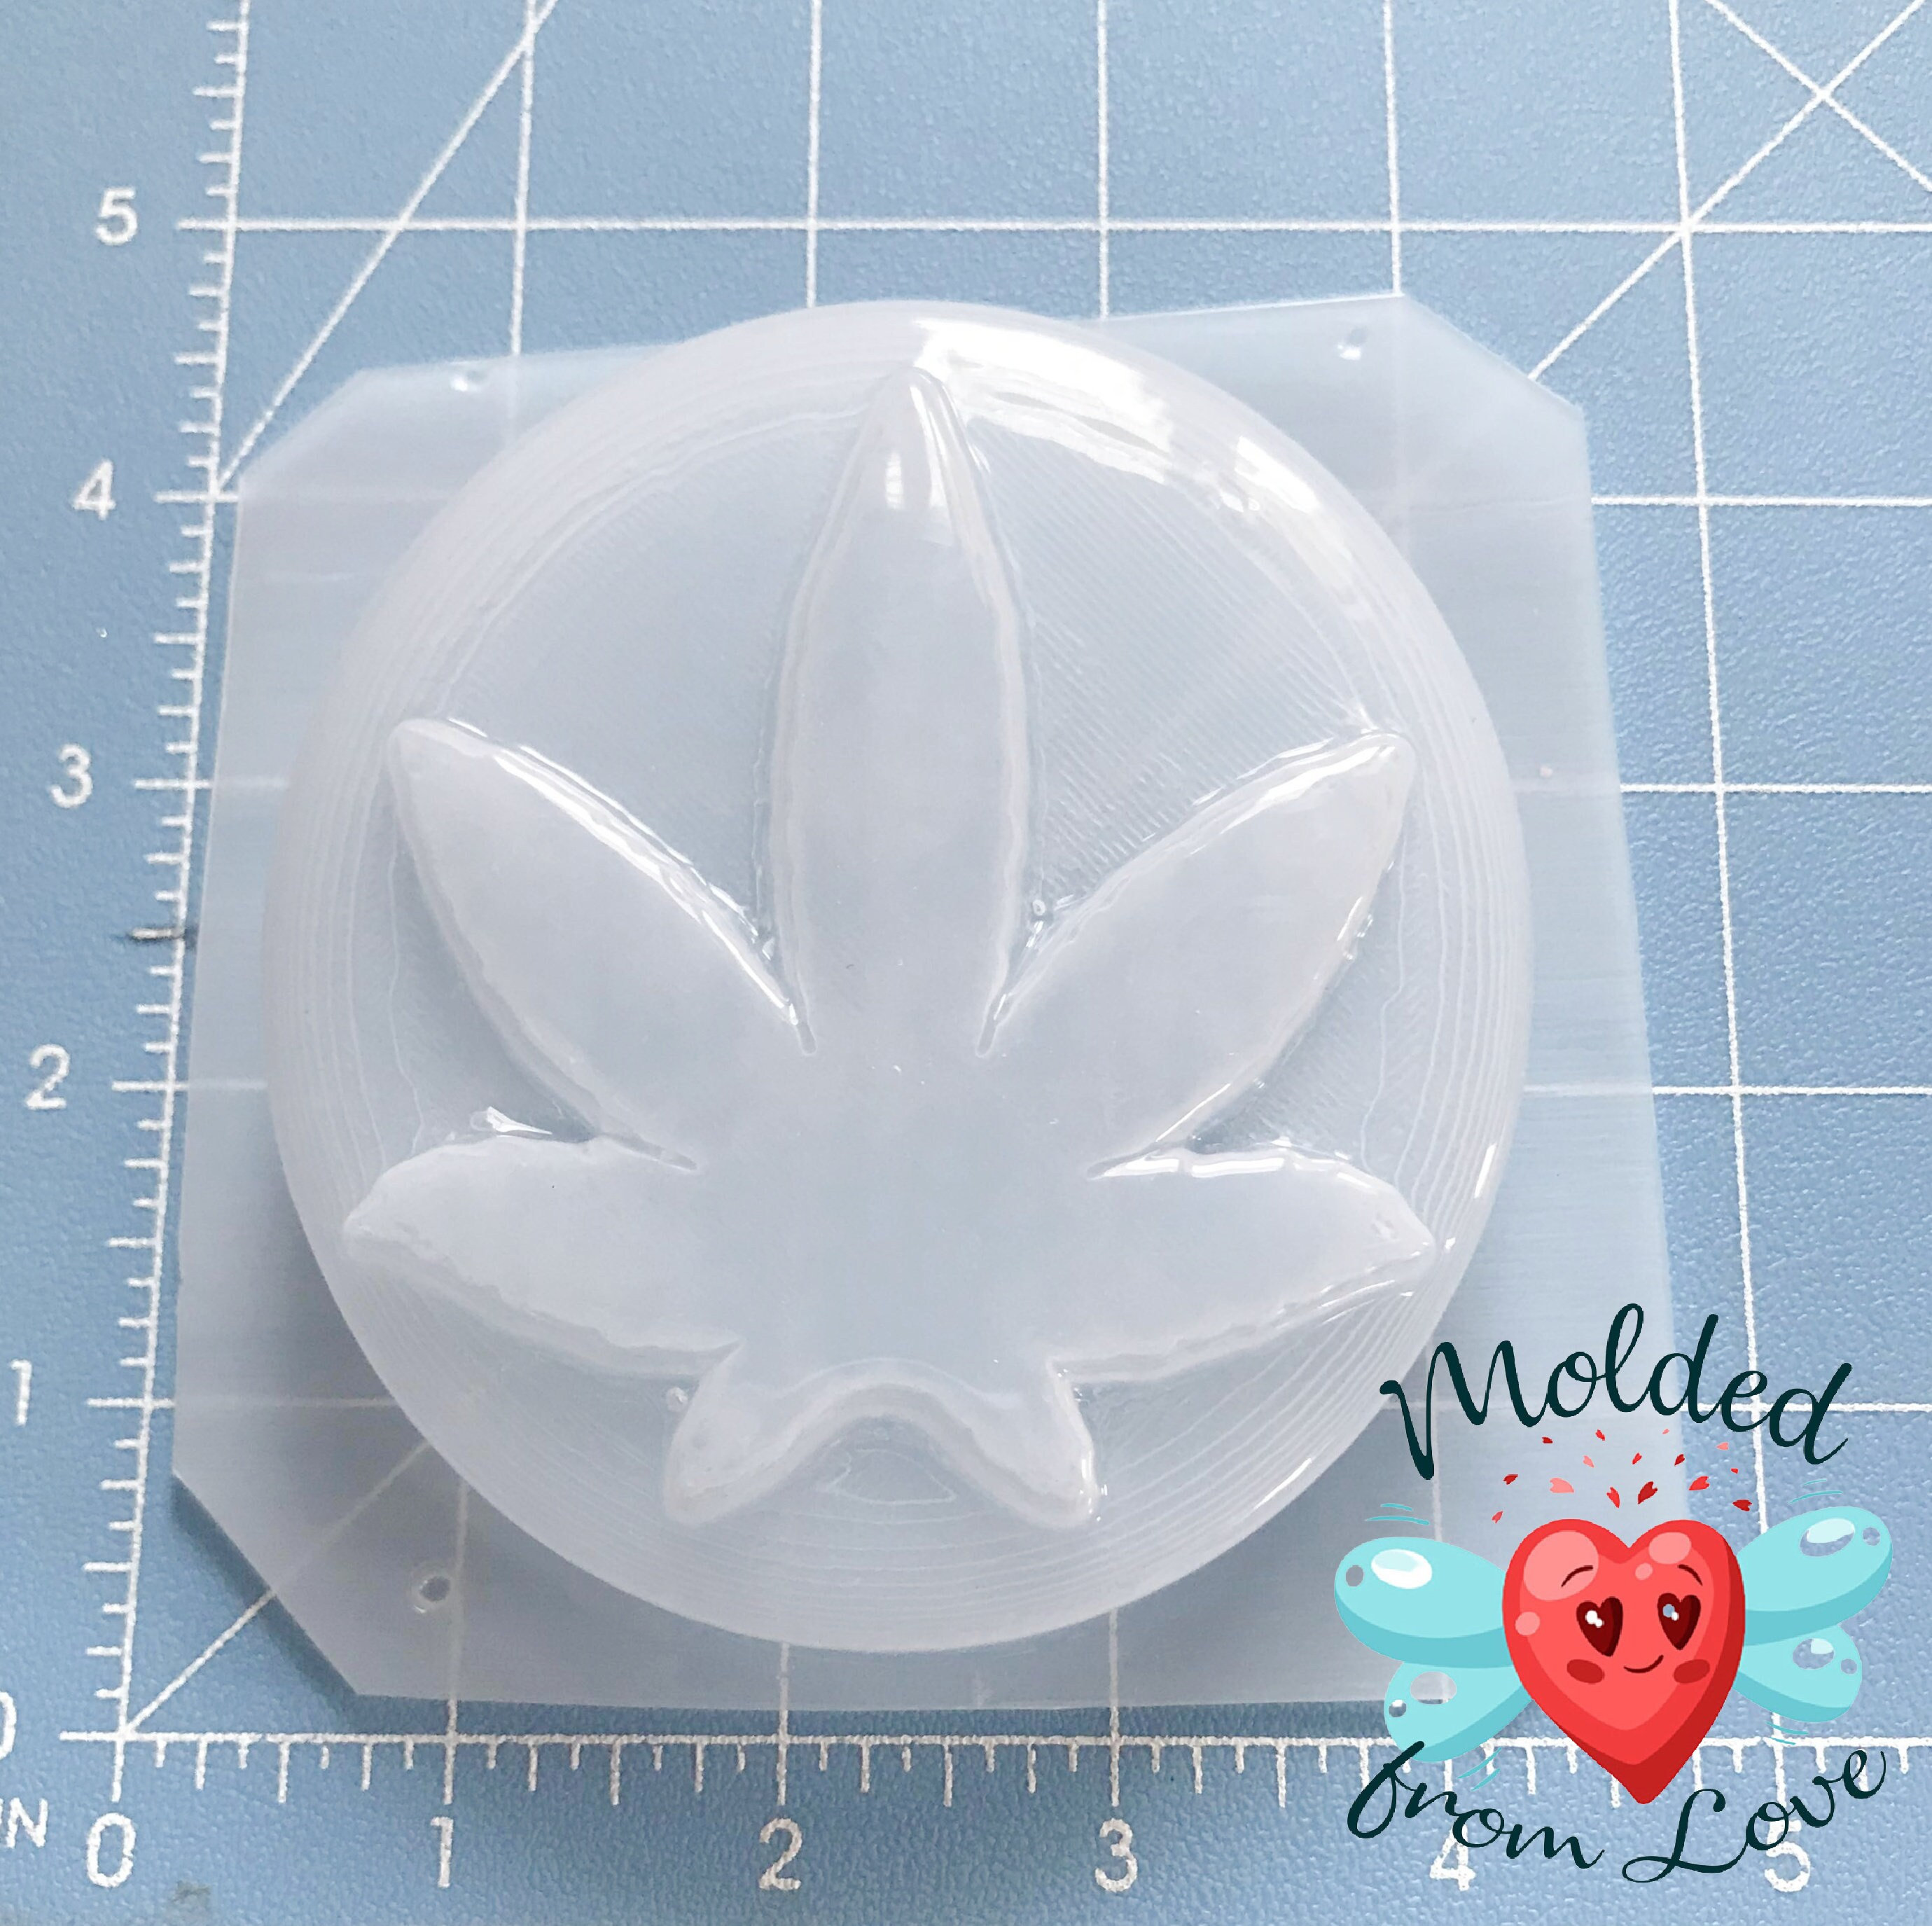  Fewo Pot Leaf Silicone Mold for Handmade Bar Soap Cannabis Leaf  Hash Weed Hemp Bath Bomb Lotion Bar Mould (5oz)